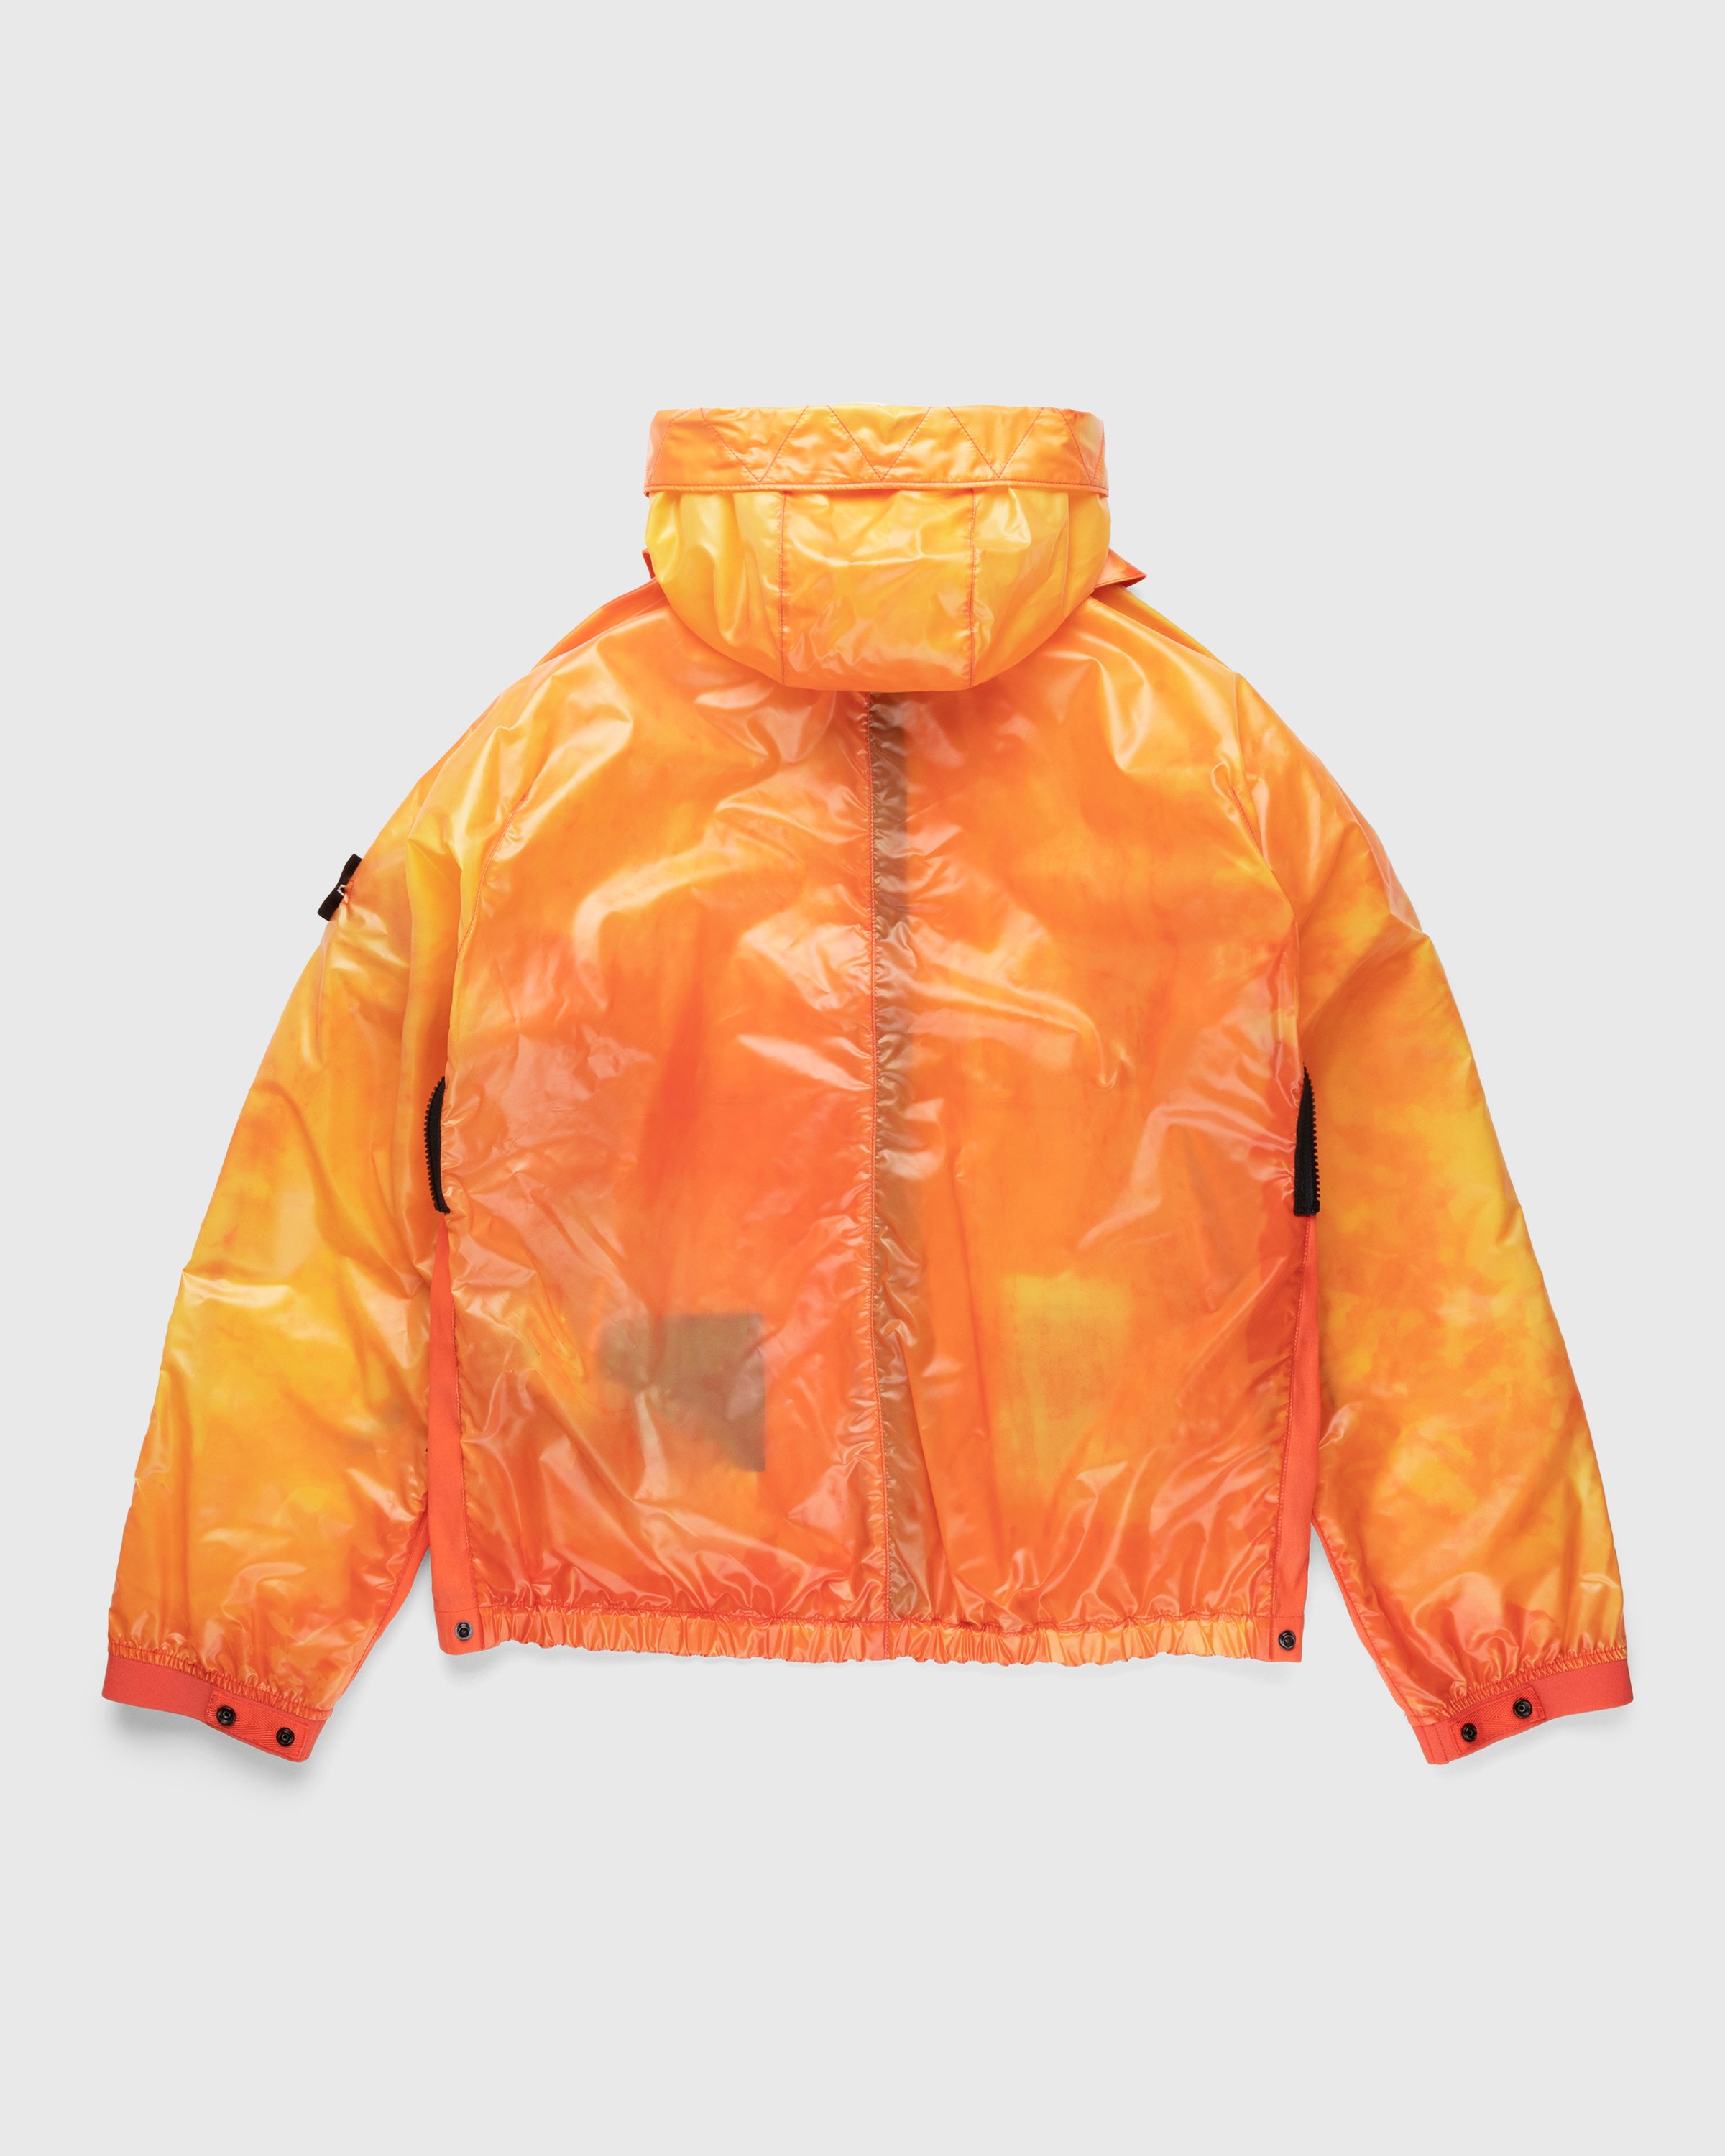 Stone Island - 41599 Heat Reactive Nylon Jacket Orange - Clothing - Orange - Image 2